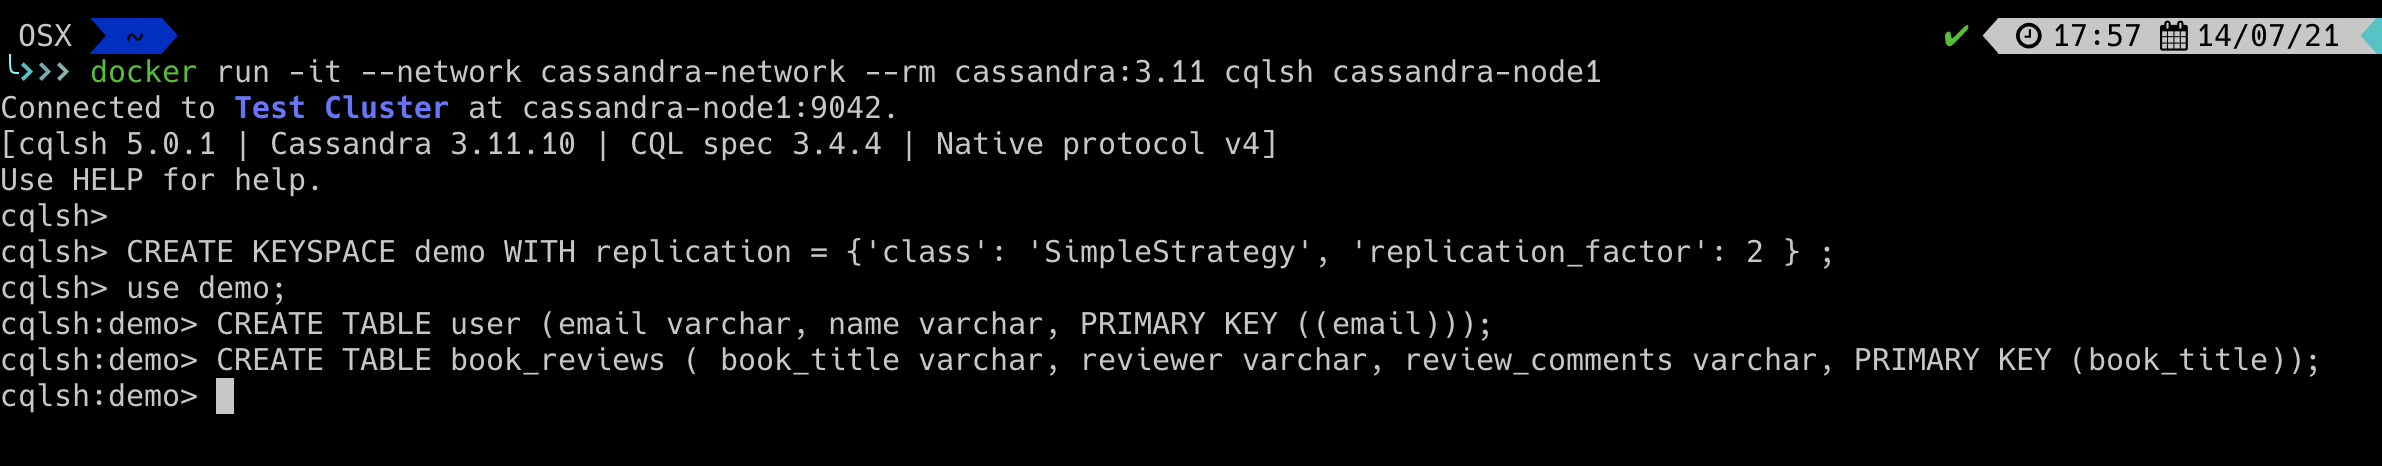 install cqlsh for cassandra 2.1 mac